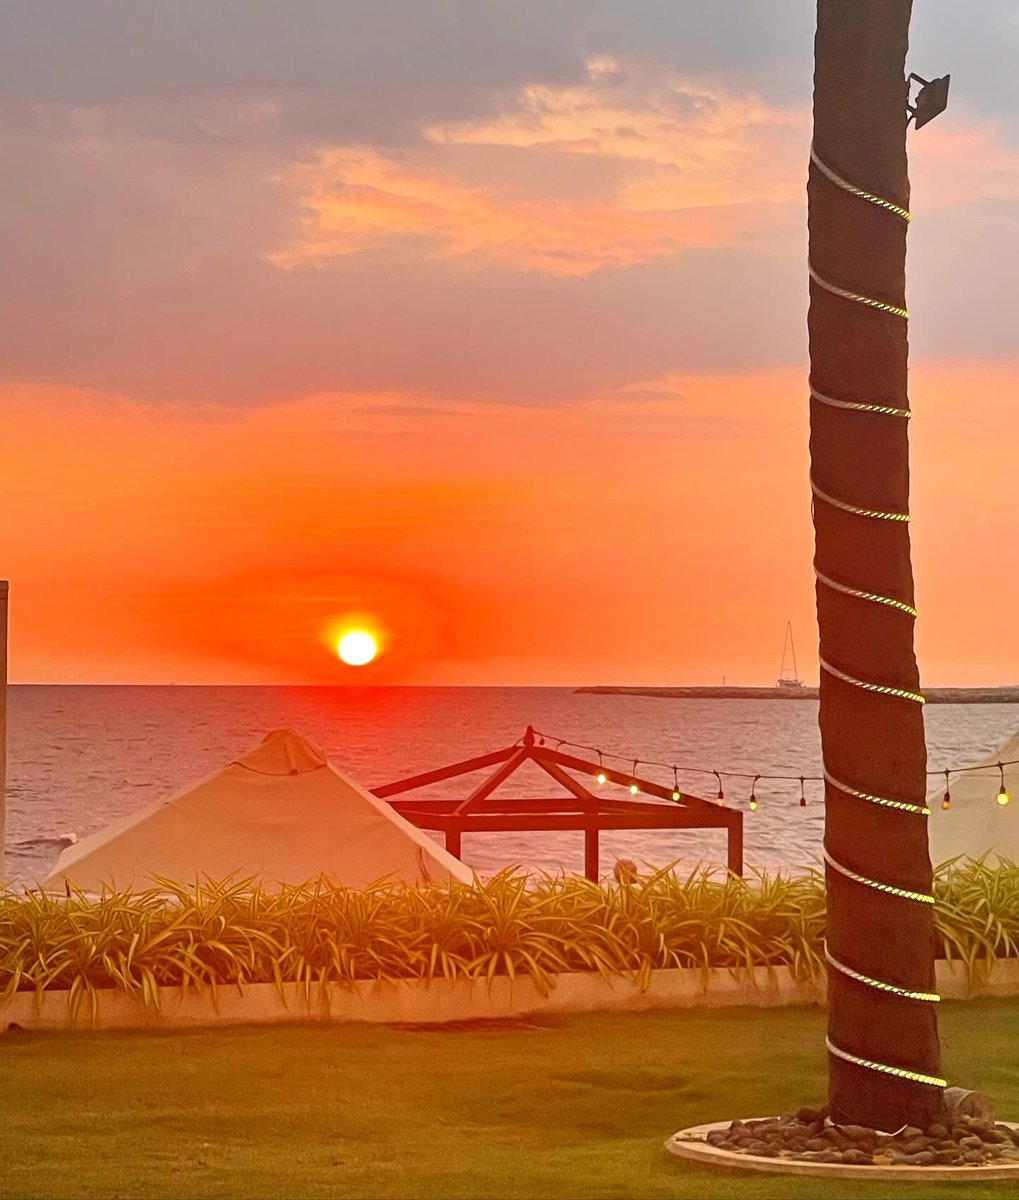 #lifeiskool op mijn laatste dag in Sri Lanka 🇱🇰 de ceremonie gevolgd van het strijken van de vlag van dat land in @GalleFace_Hotel in Colombo bij zonsondergang. Een mooie traditie met doedelzakspeler en hoofd conciërge. Ik kan naar Nederland 🇳🇱